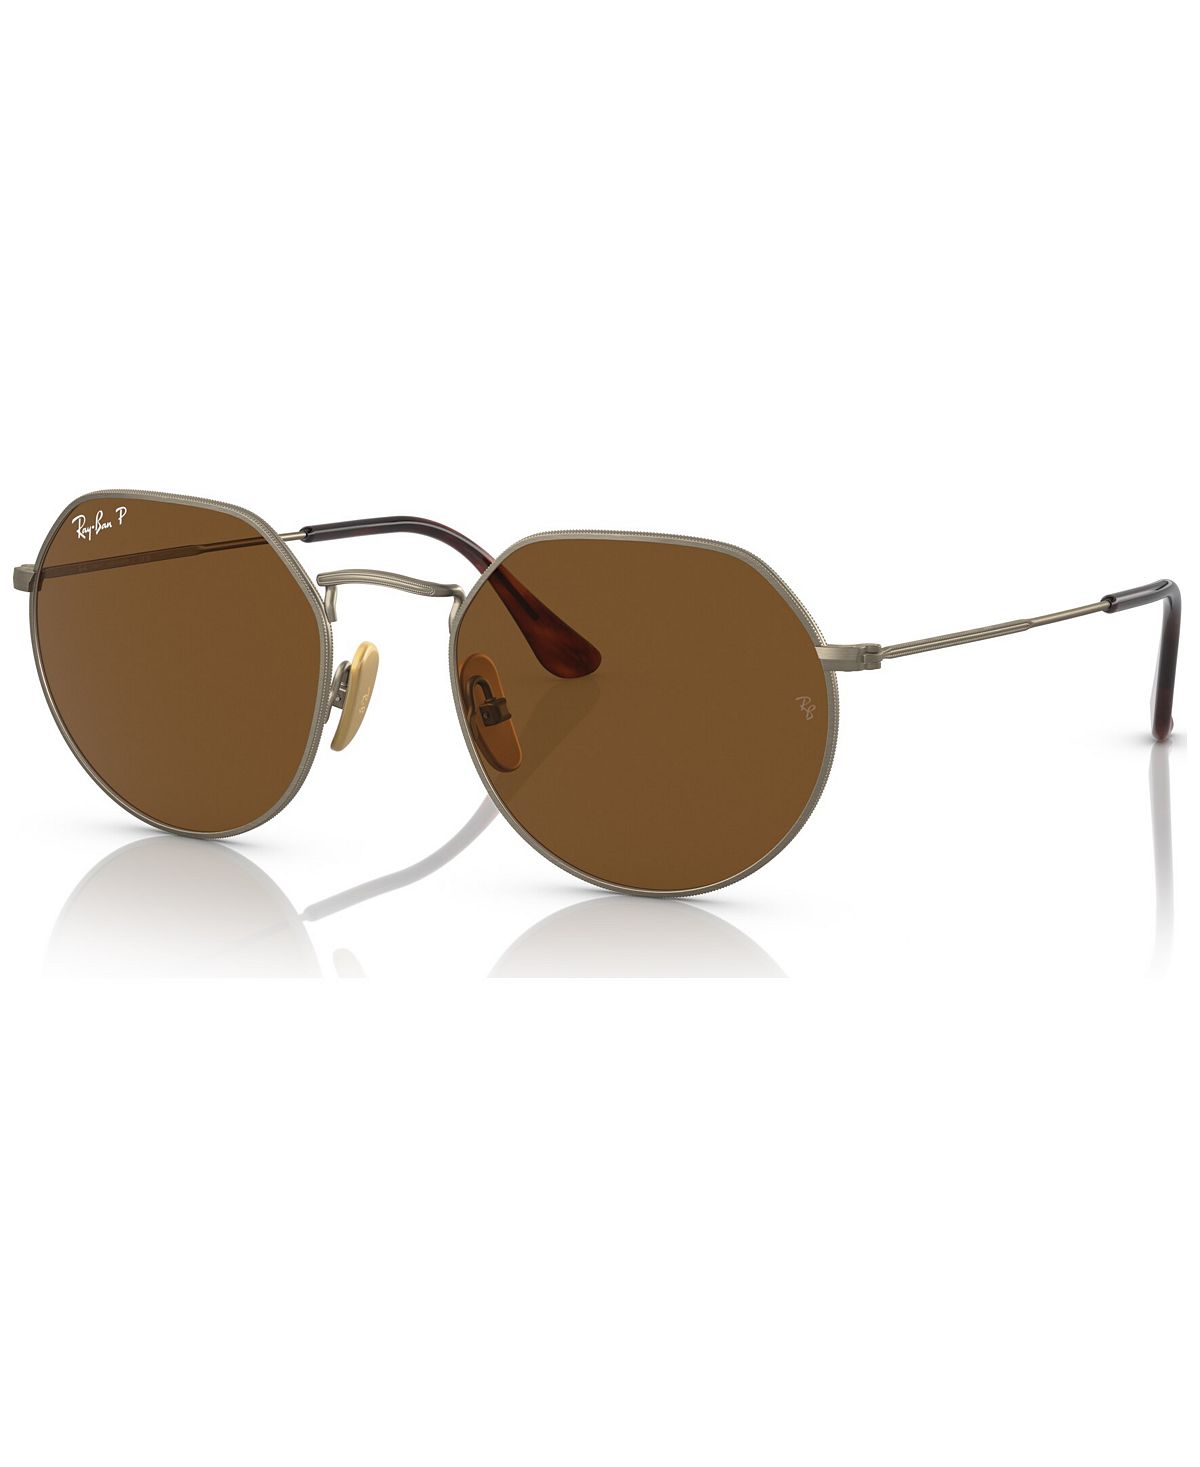 Поляризованные солнцезащитные очки унисекс, RB816551-P Ray-Ban цена и фото